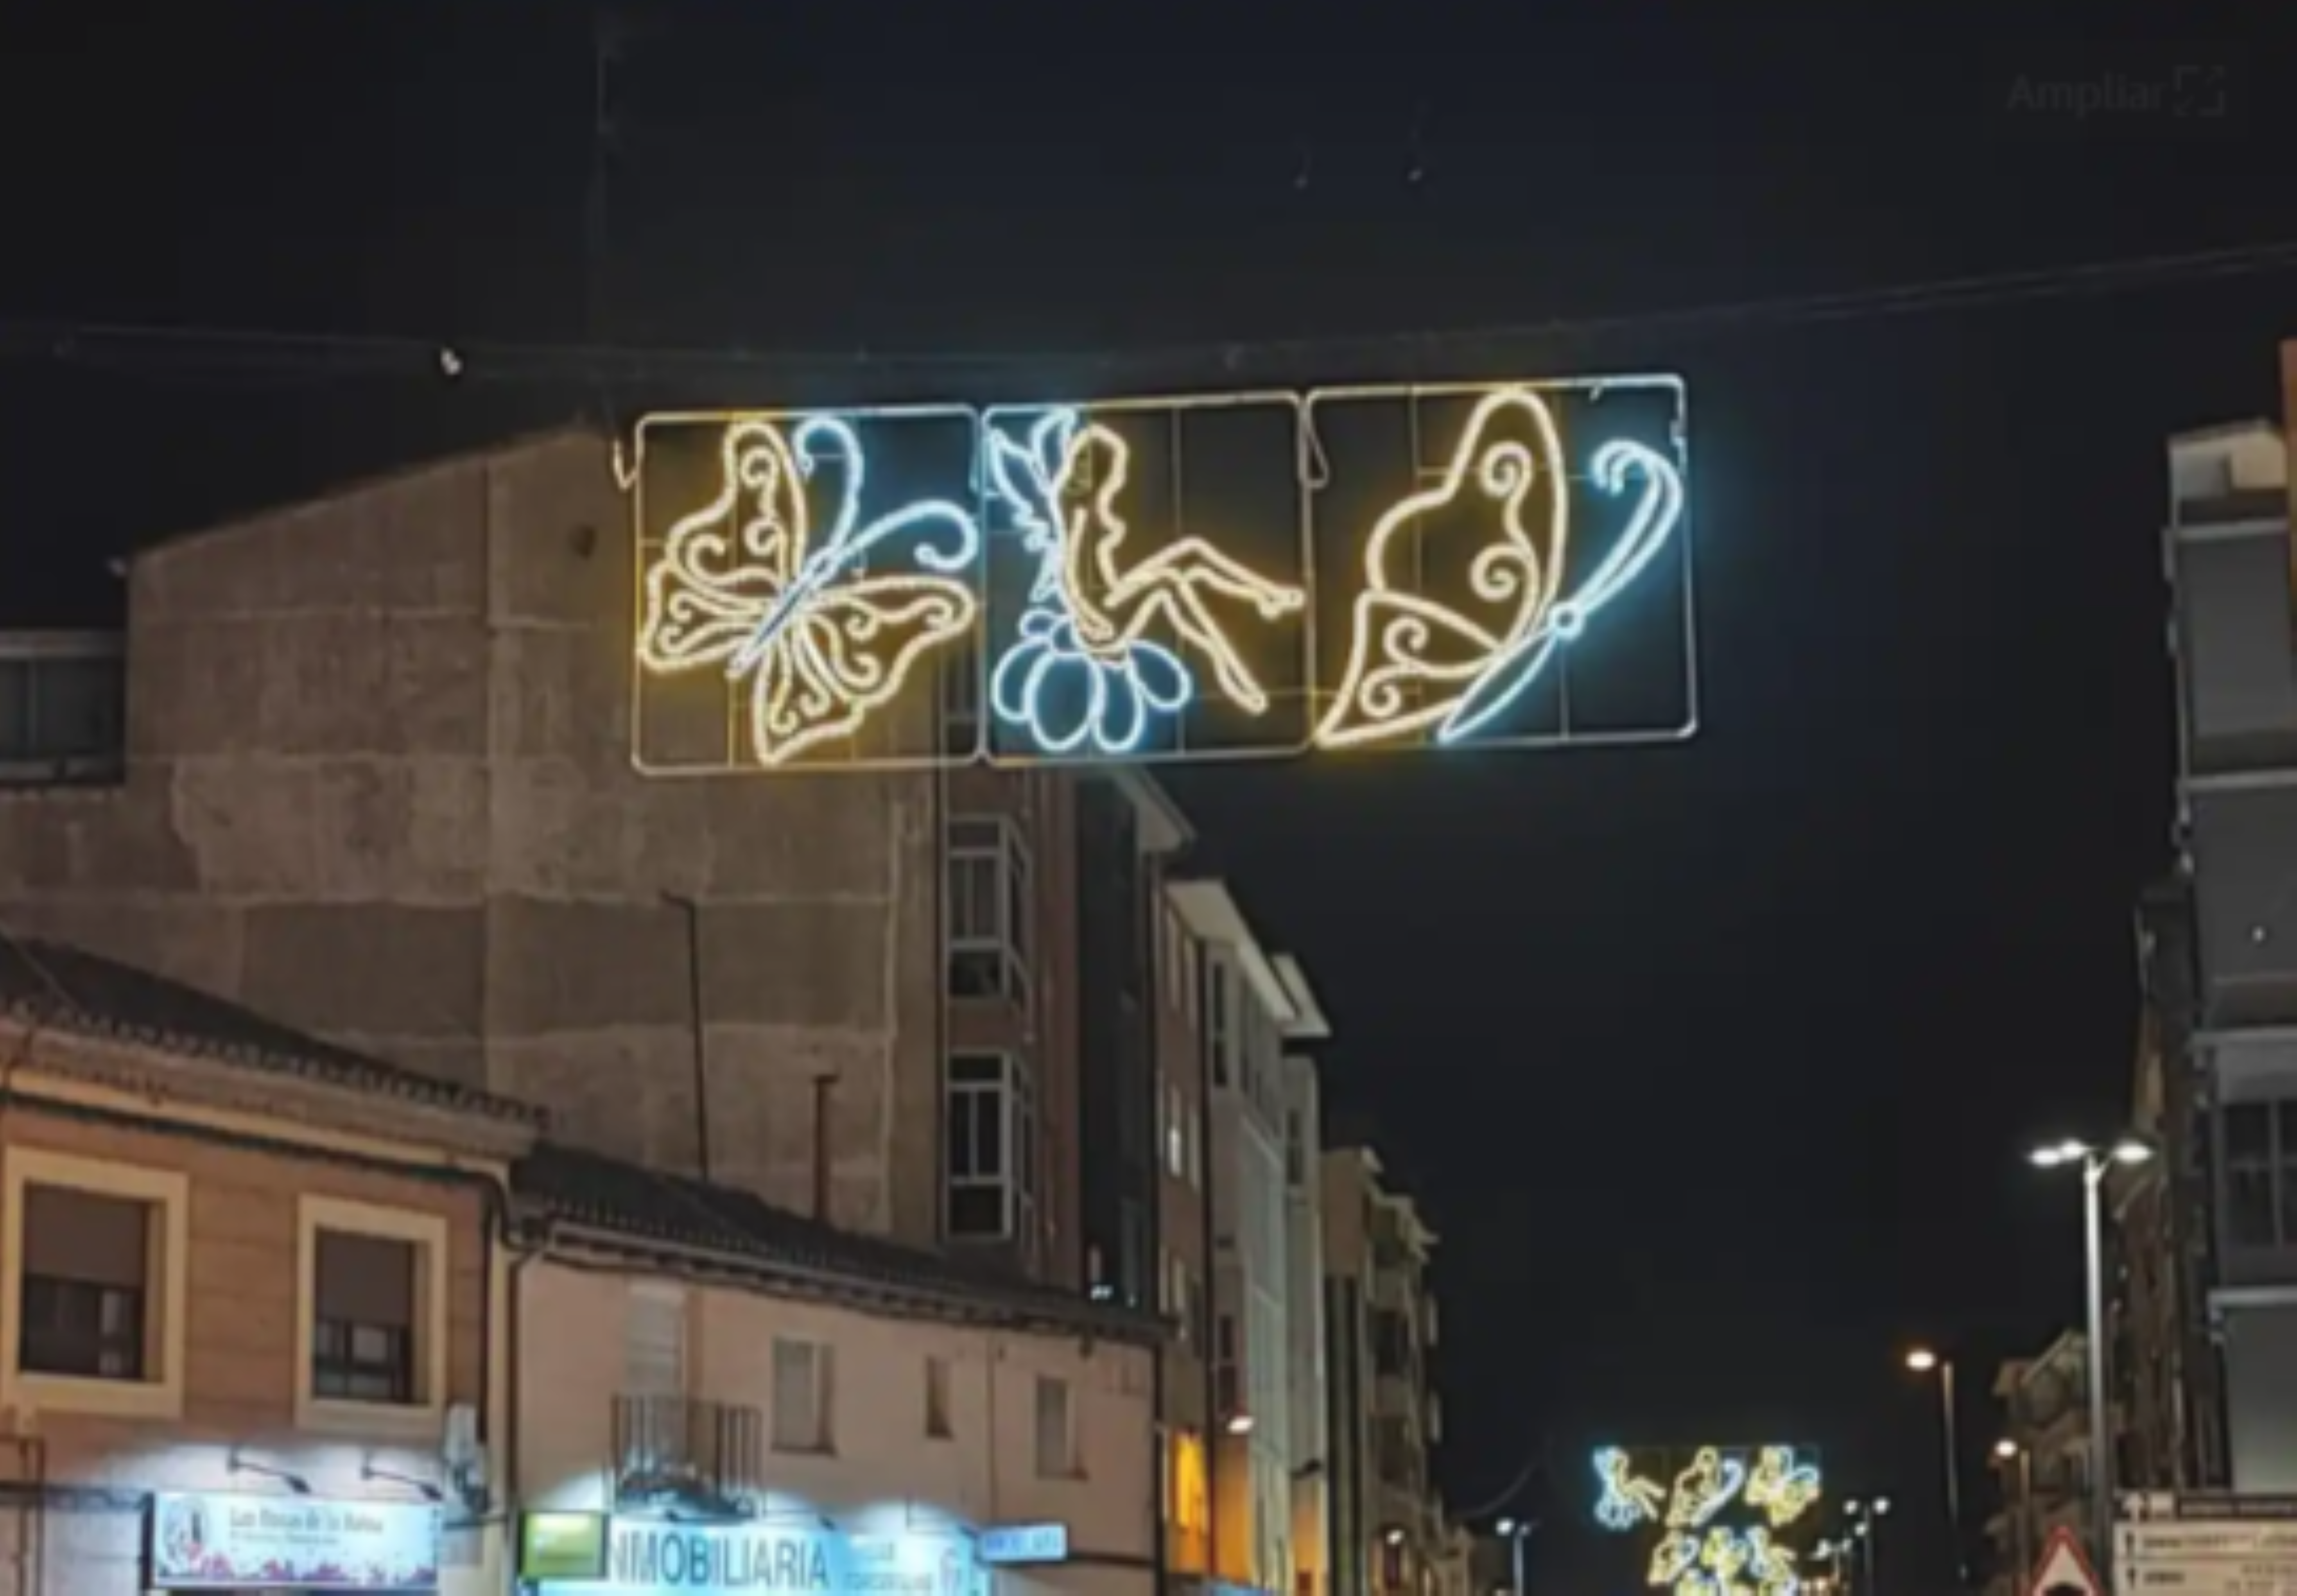 Polémica en Tordesillas por unas luces de Navidad eróticas